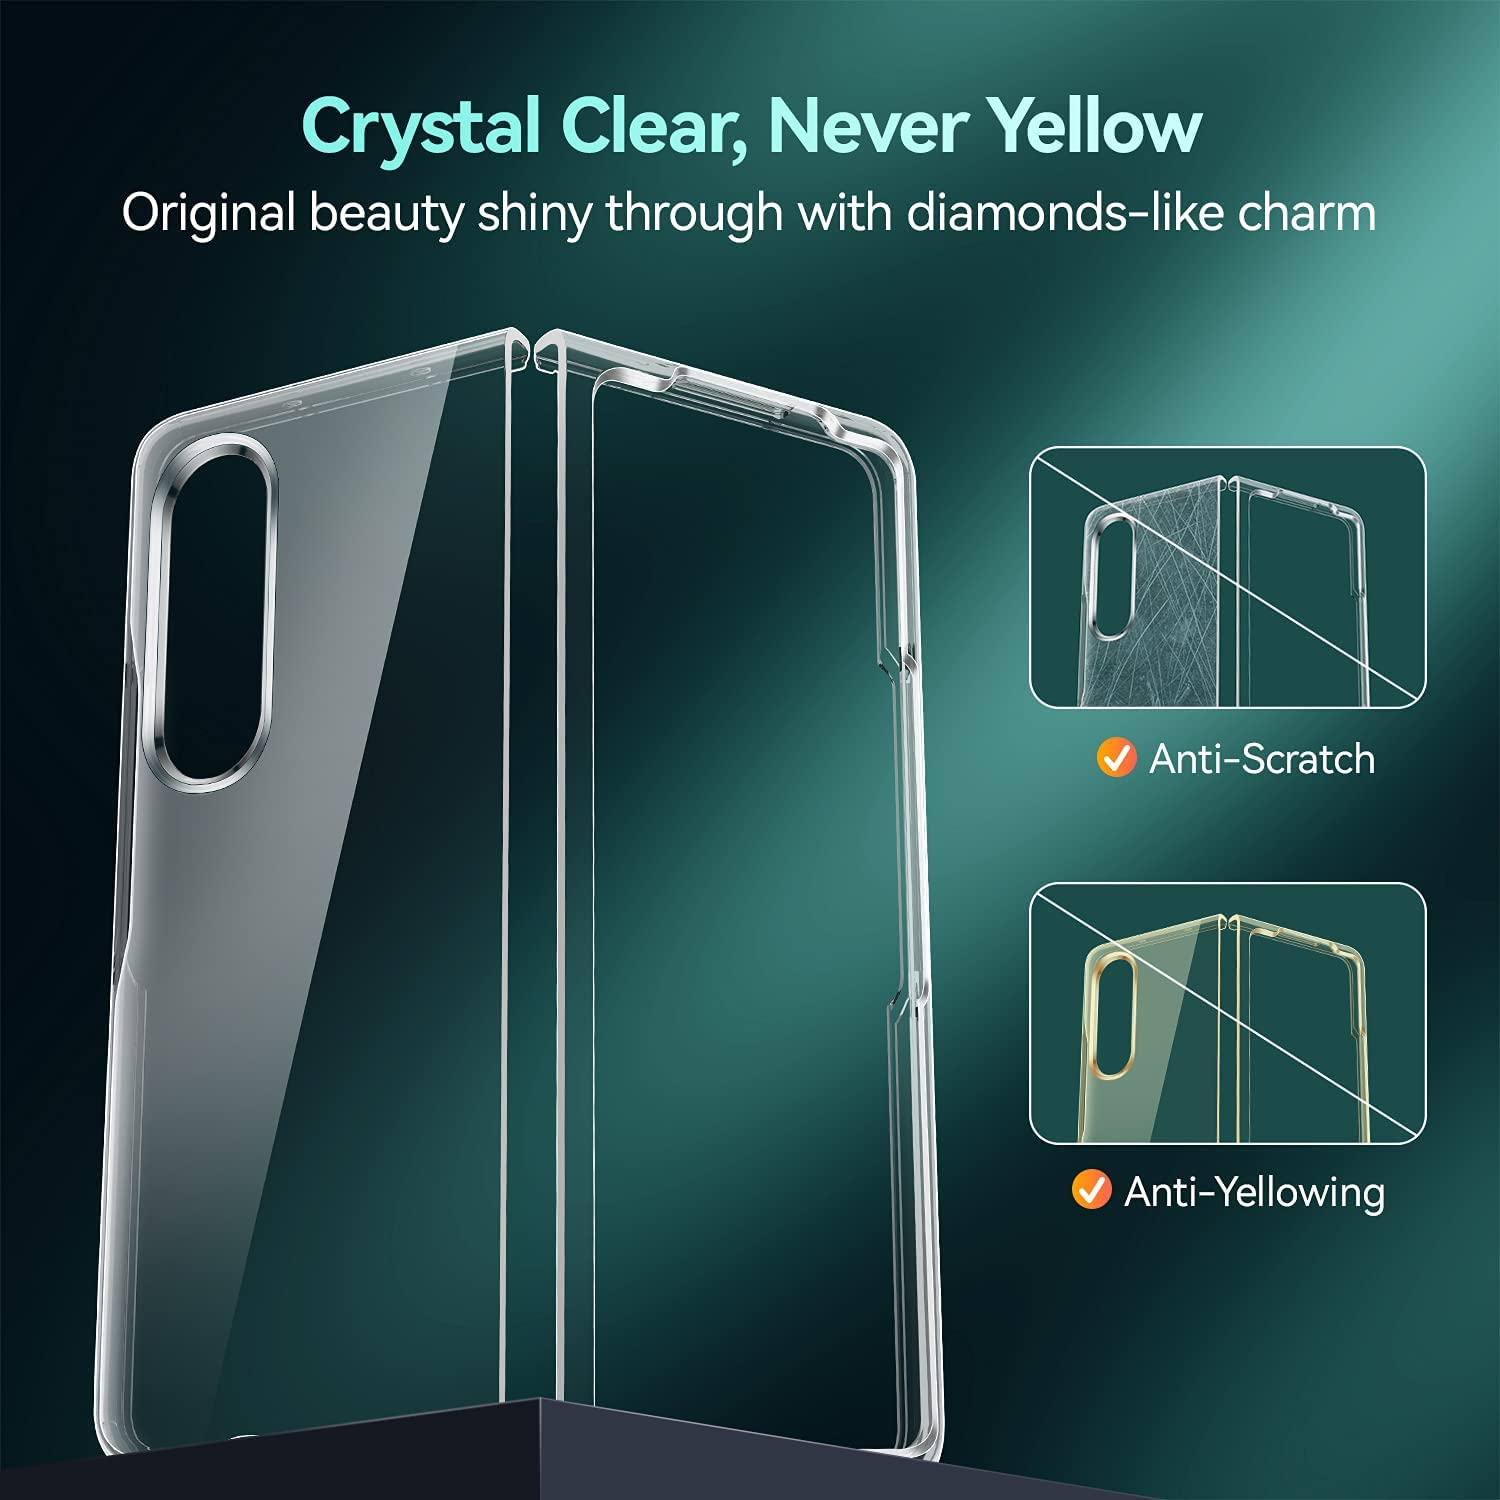 Ốp lưng chống sốc cho Samsung Galaxy Z Fold 3 hiệu Likgus Glitter siêu mỏng 1.5mm độ trong tuyệt đối, chống trầy xước, chống ố vàng, tản nhiệt tốt - hàng nhập khẩu